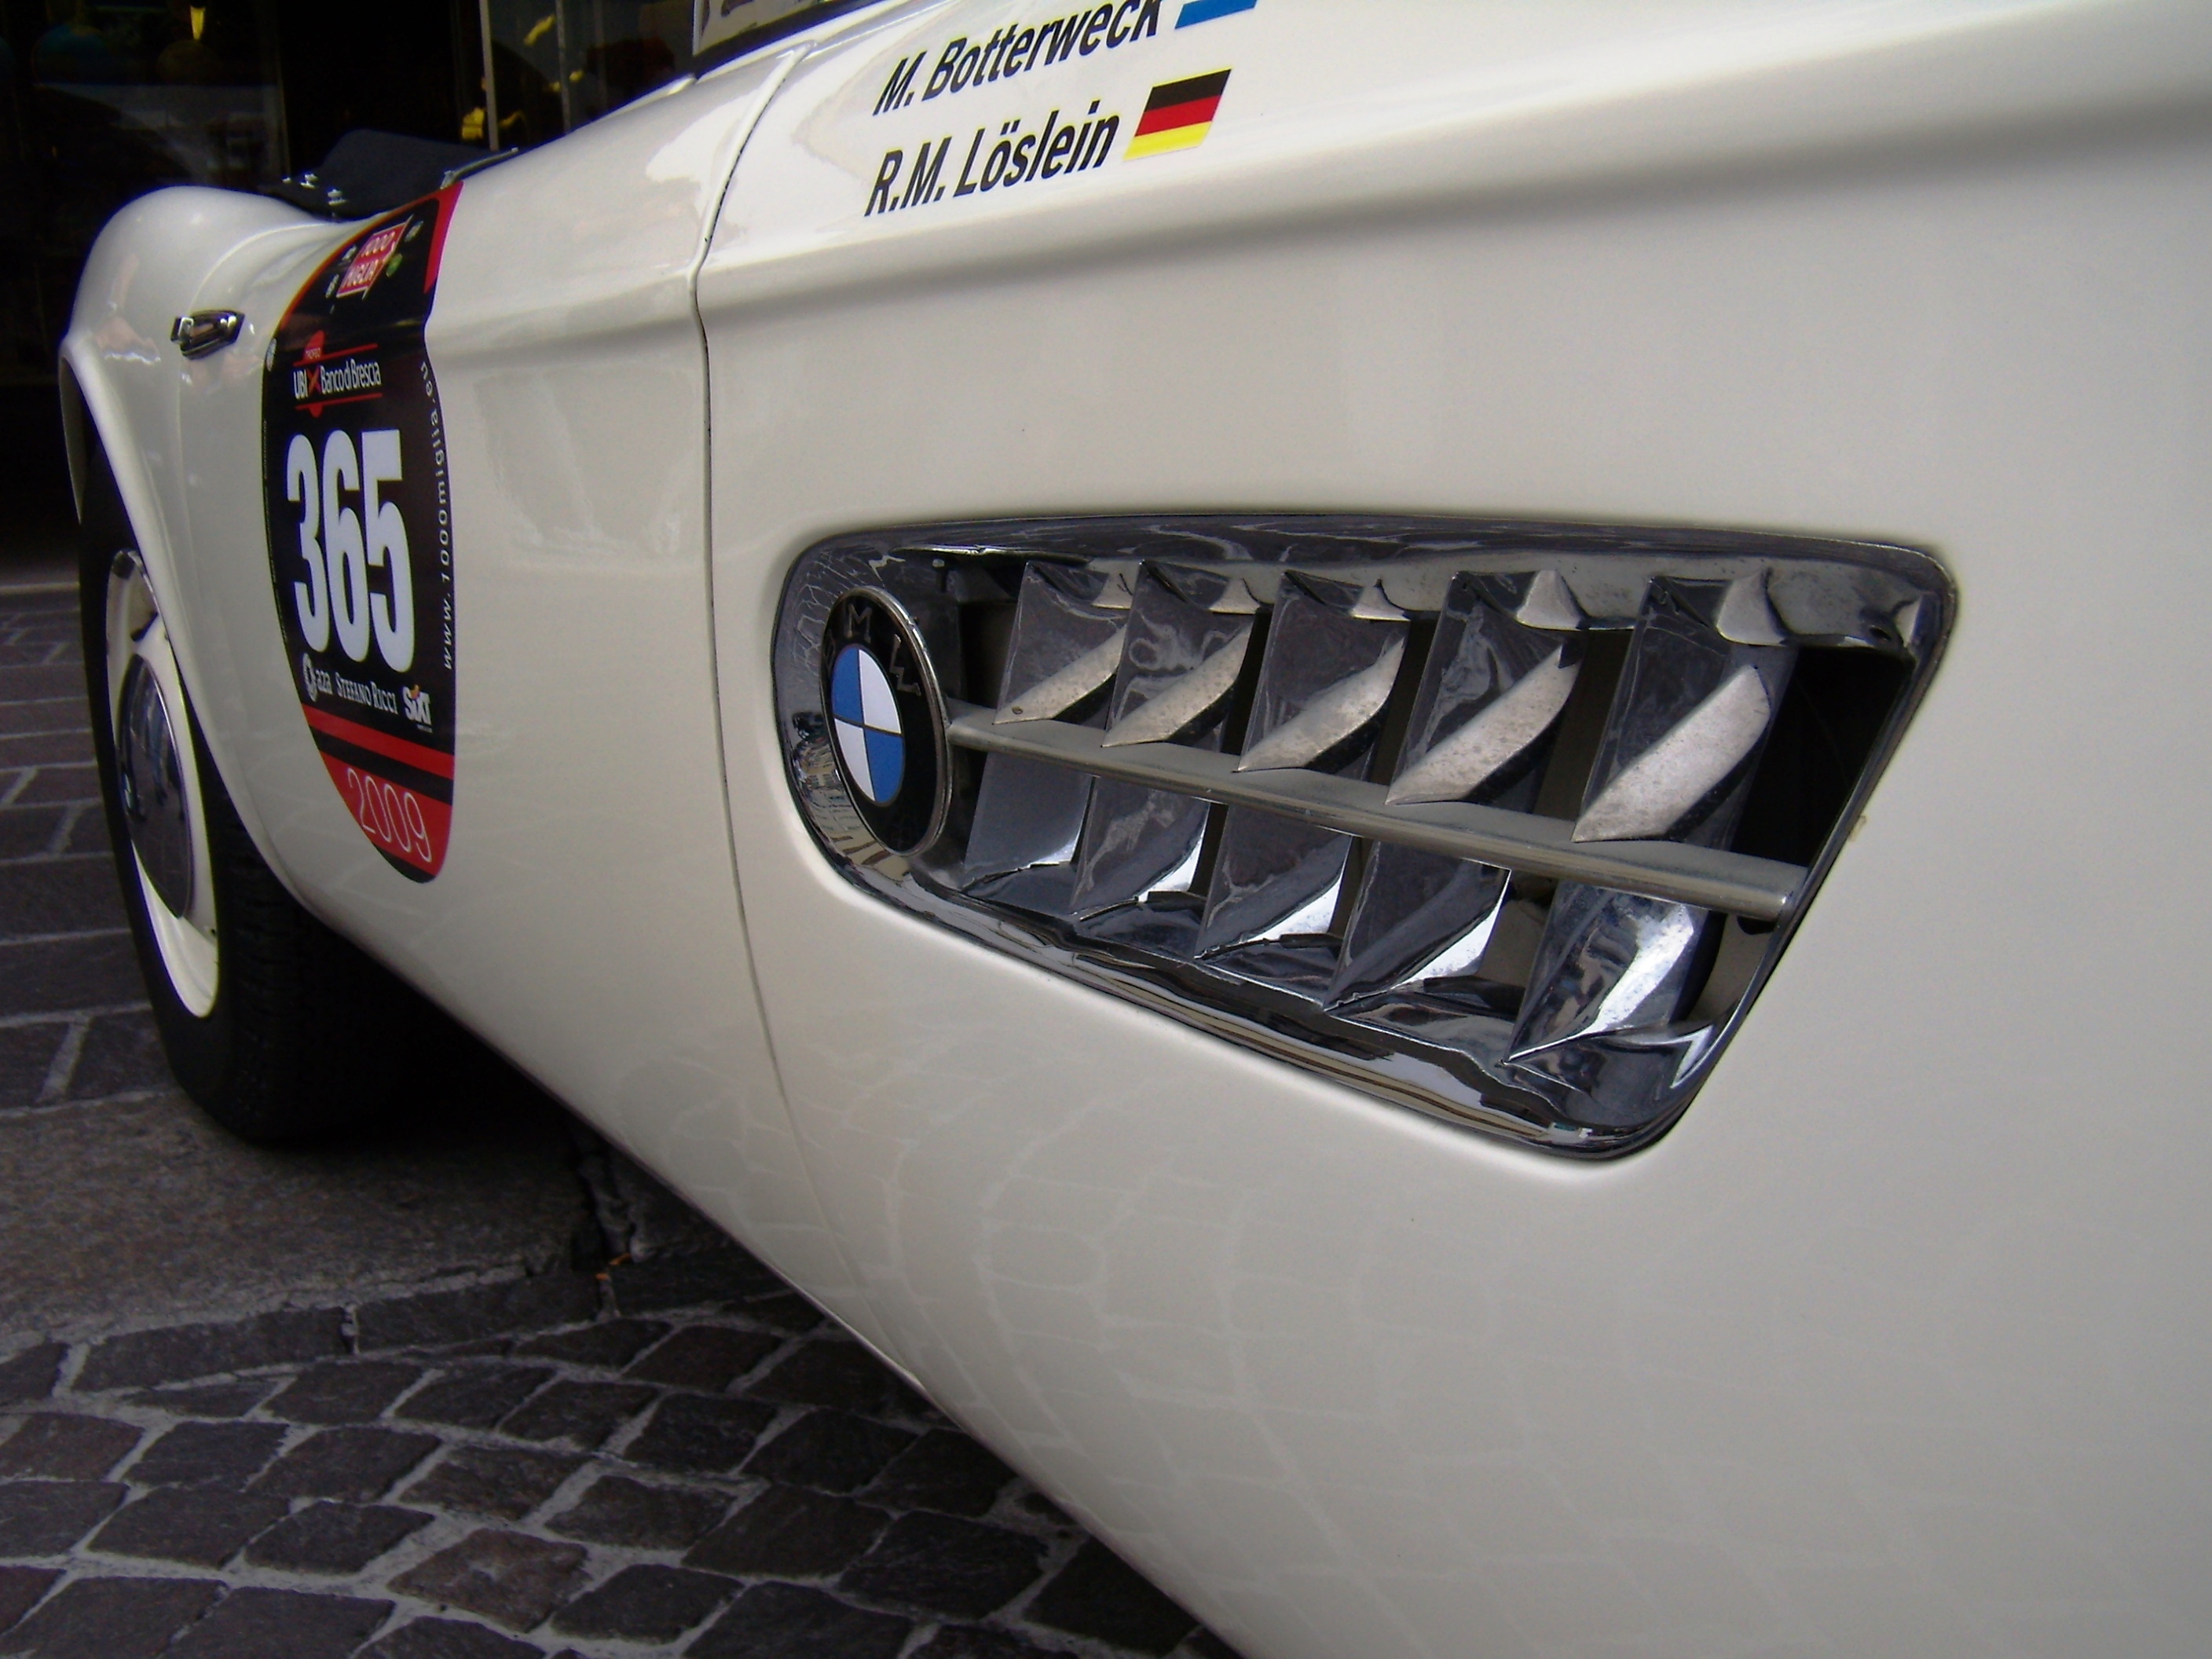 Millemiglia 2009 (109)BMW 507 Gran Turismo | Flickr - Photo Sharing!